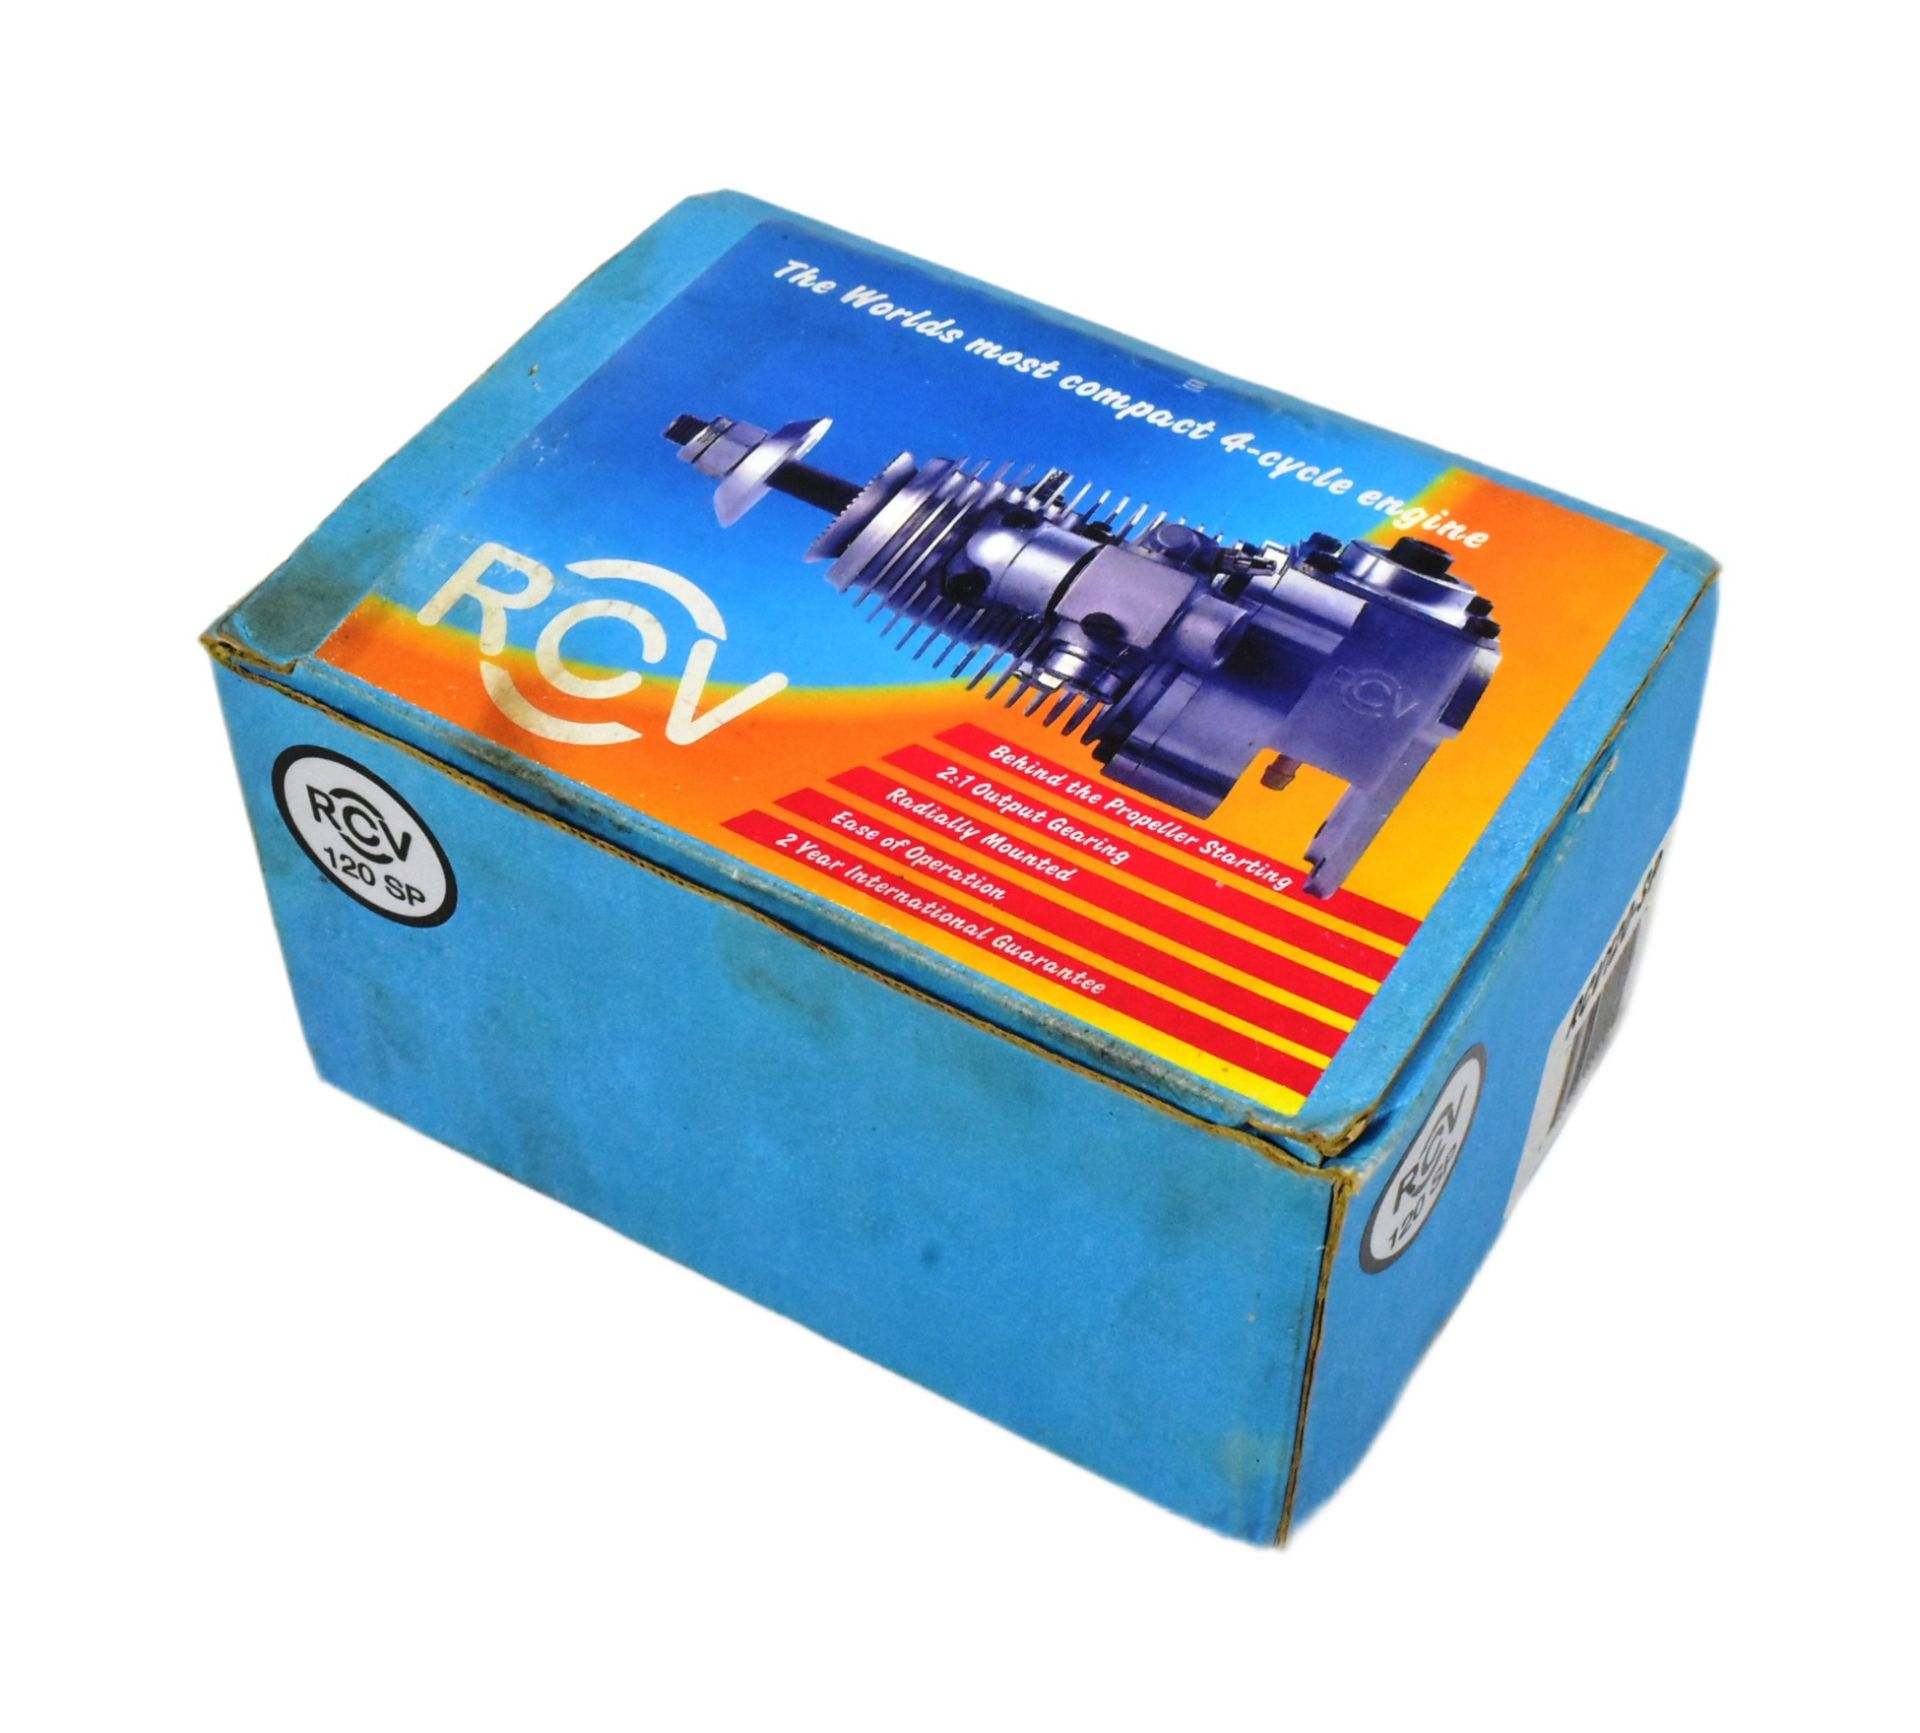 RC PLANES - BOXED RCV 4 CYCLE RADIO CONTROL PLANE ENGINE